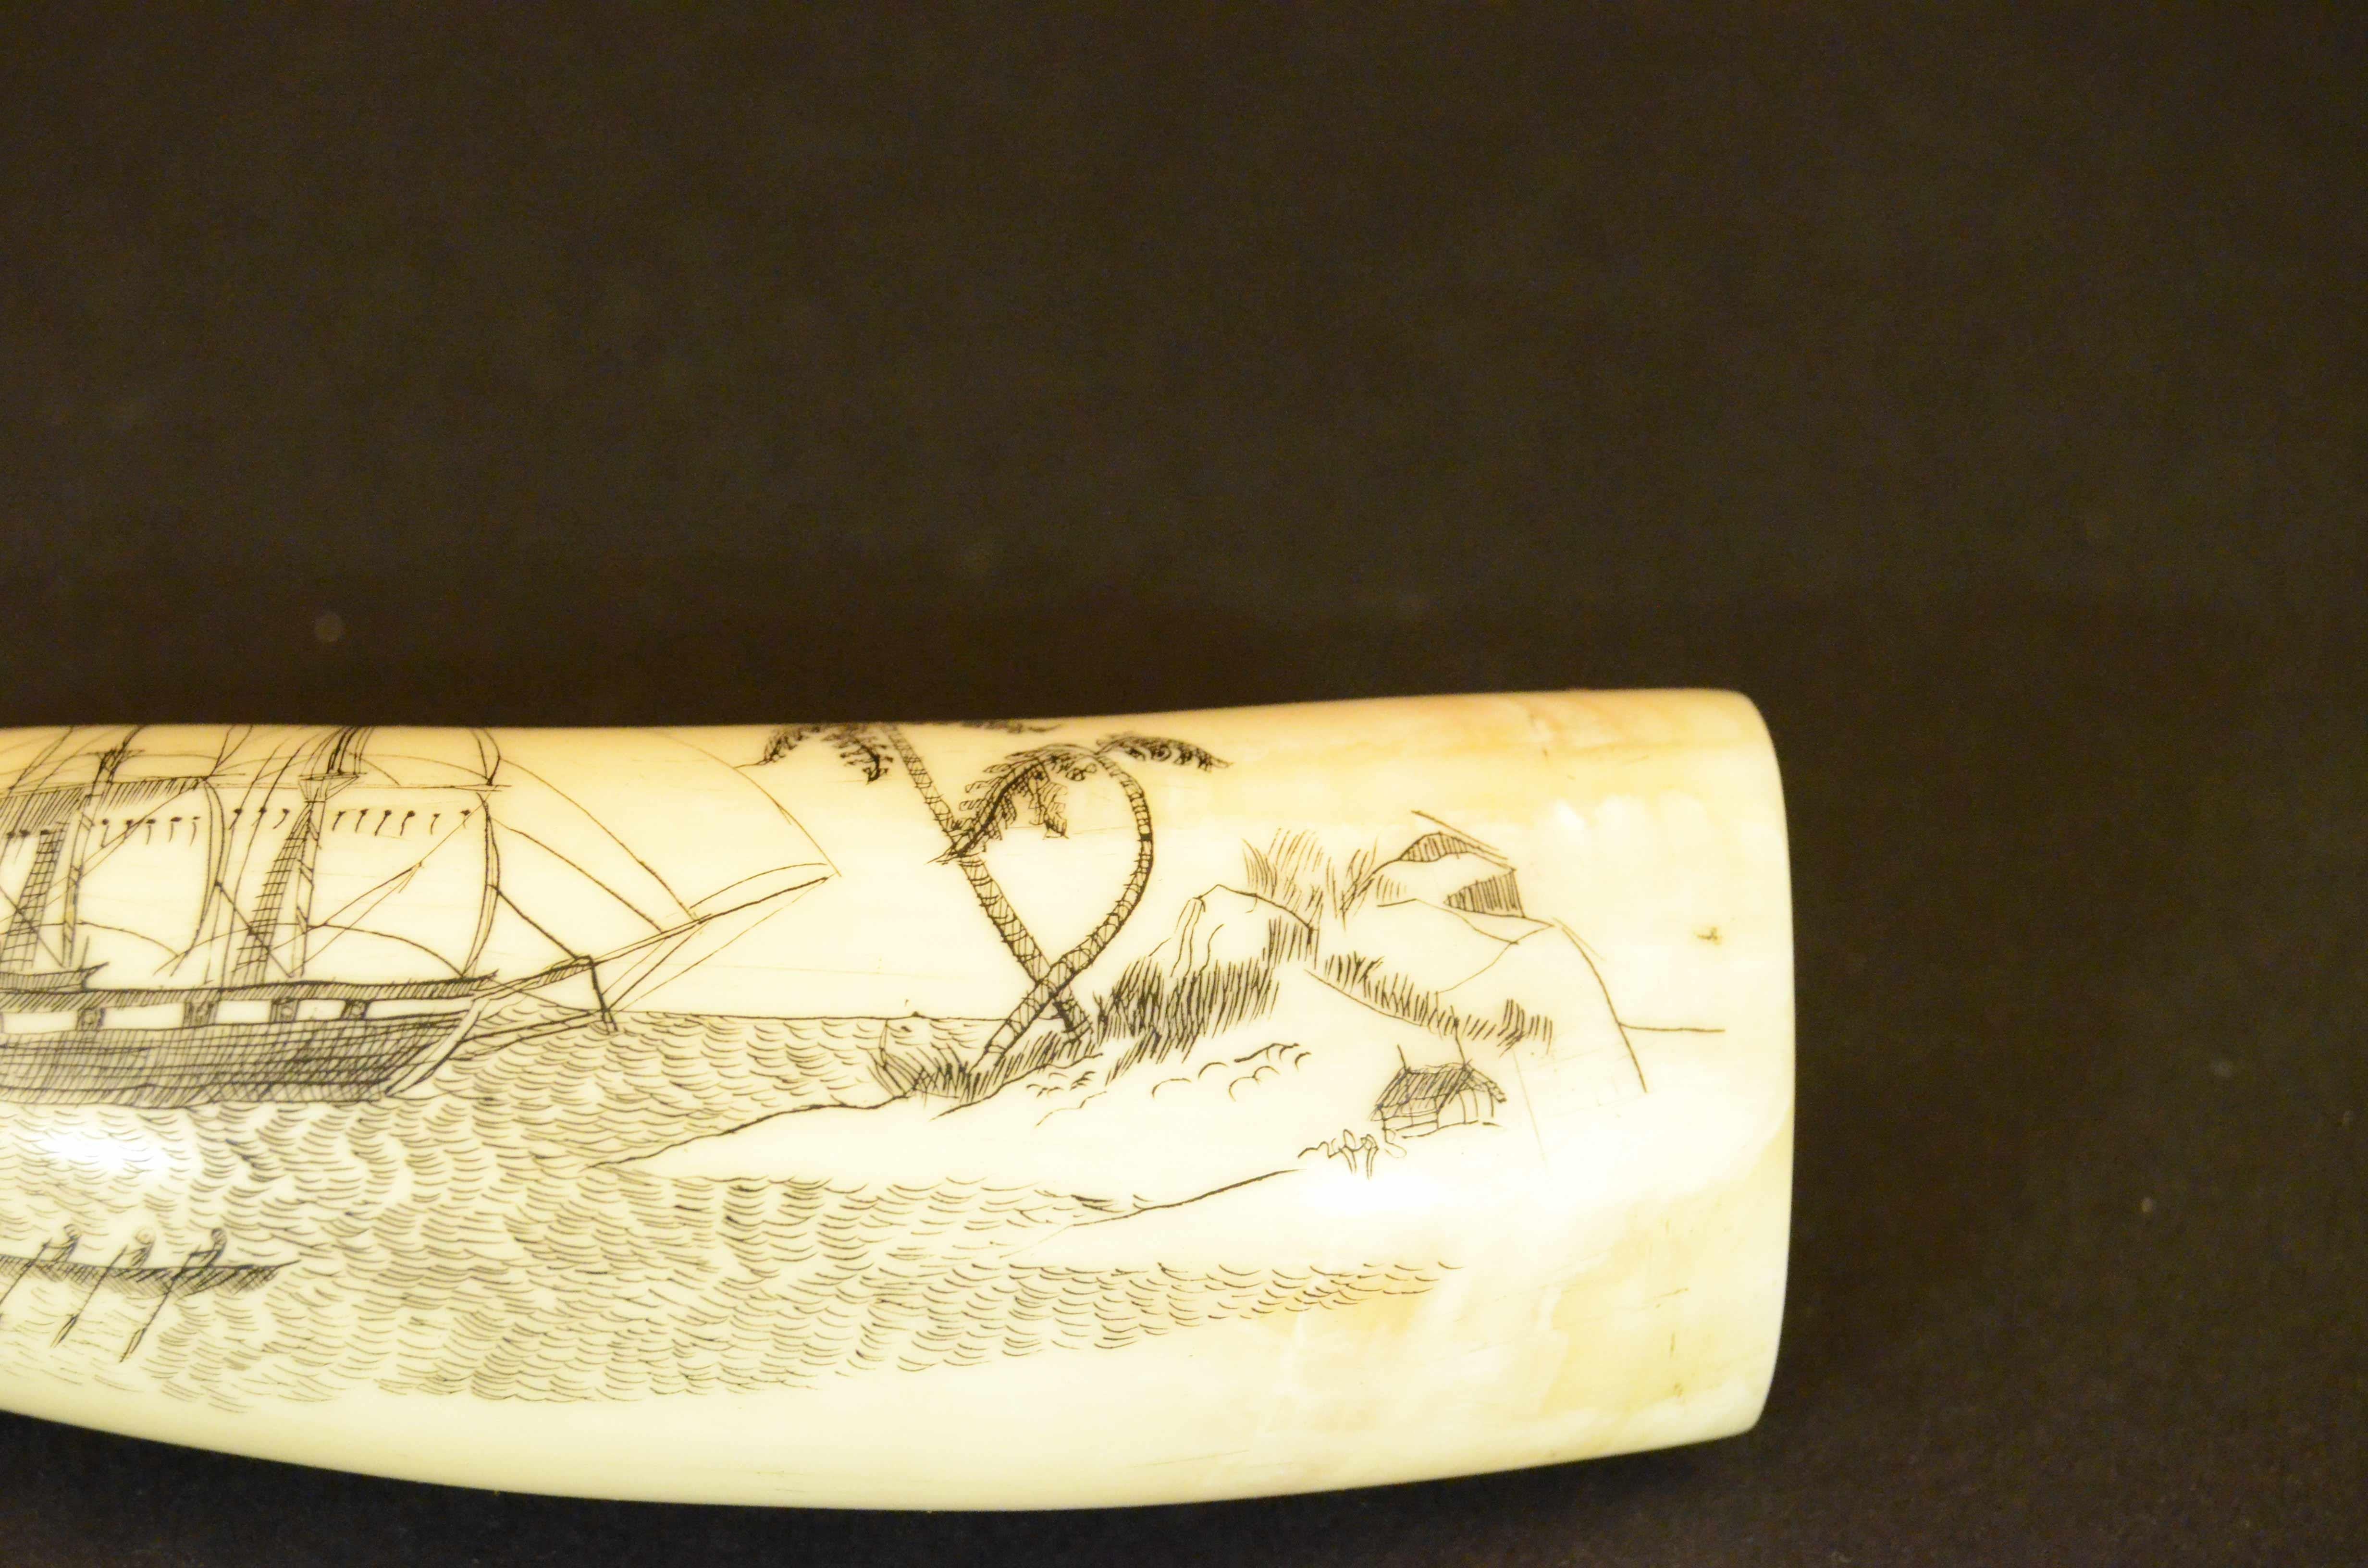 Scrimshaw di un dente di balena inciso, raffigurante  veliero a tre alberi barca a remi con 5 balenieri e piccola isola con palme, rocce e una capanna. Sul retro all’interno di un cartiglio CAP.  RINGOLD SYDNEY e la data 1860.
Buono stato. Misure cm